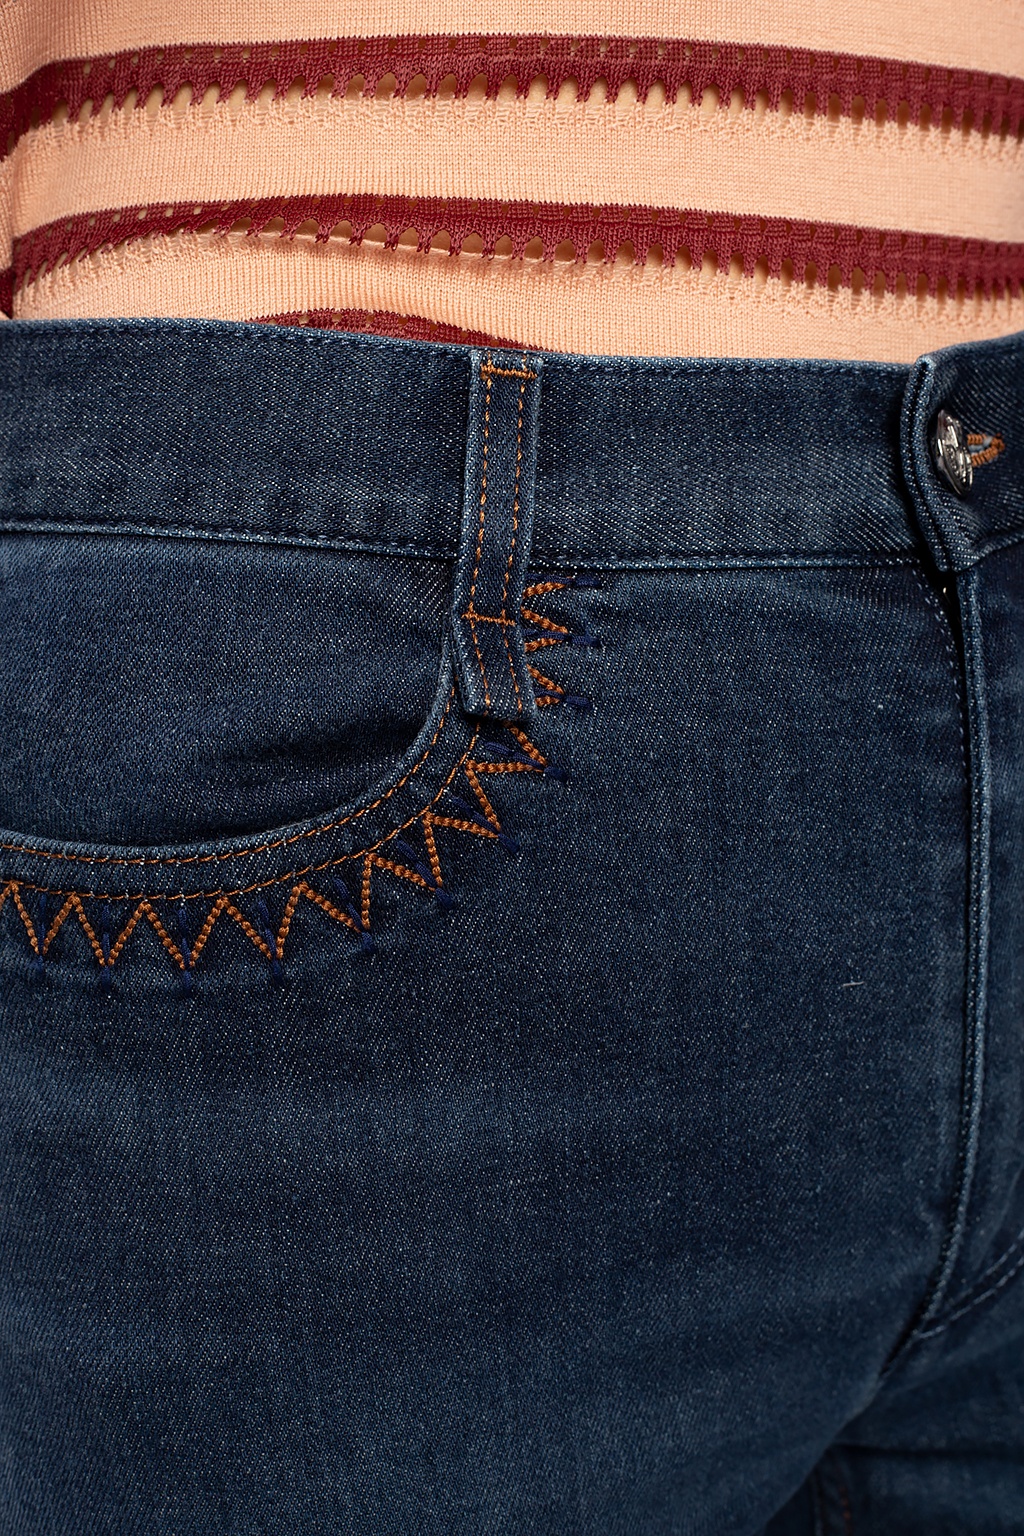 Chloé Stitched jeans